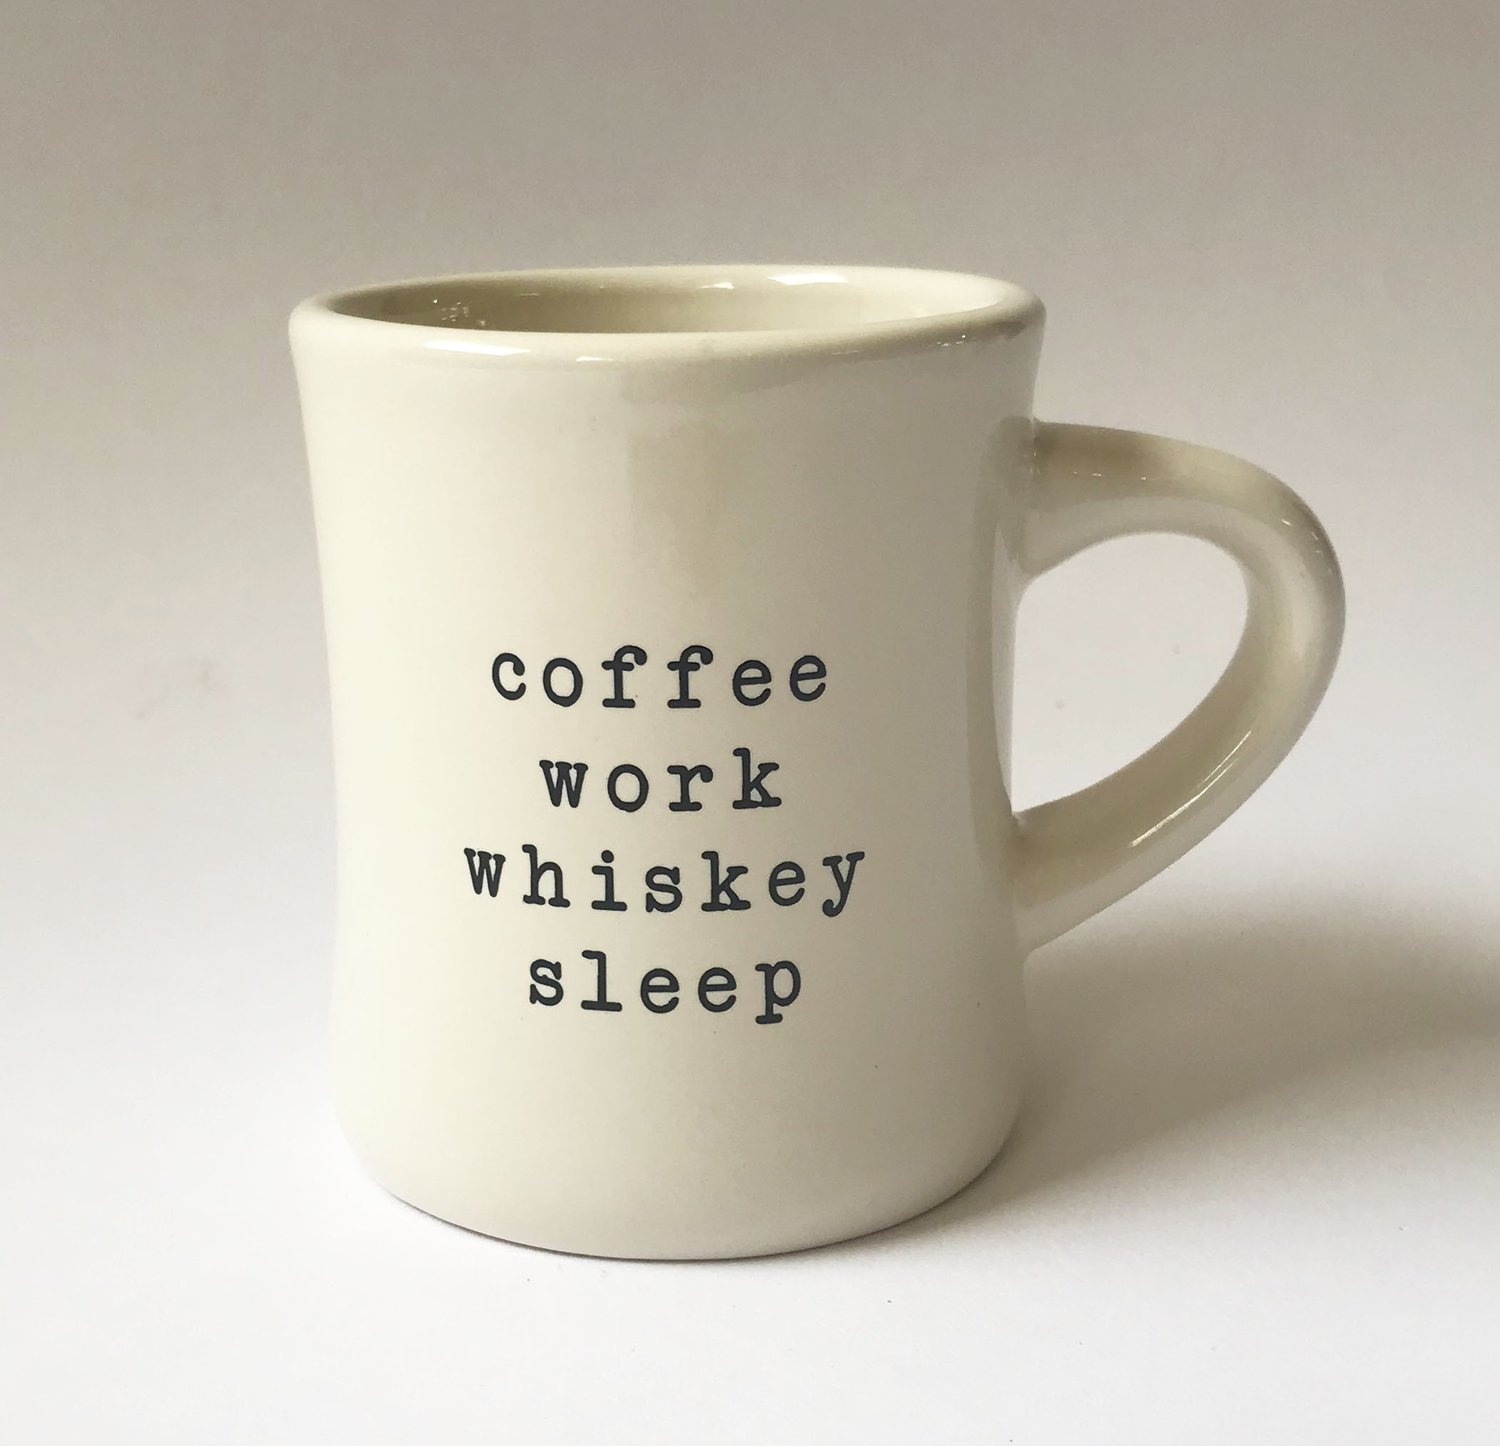 Probably Whiskey Mug Dishwasher Safe Whiskey Coffee Mug 